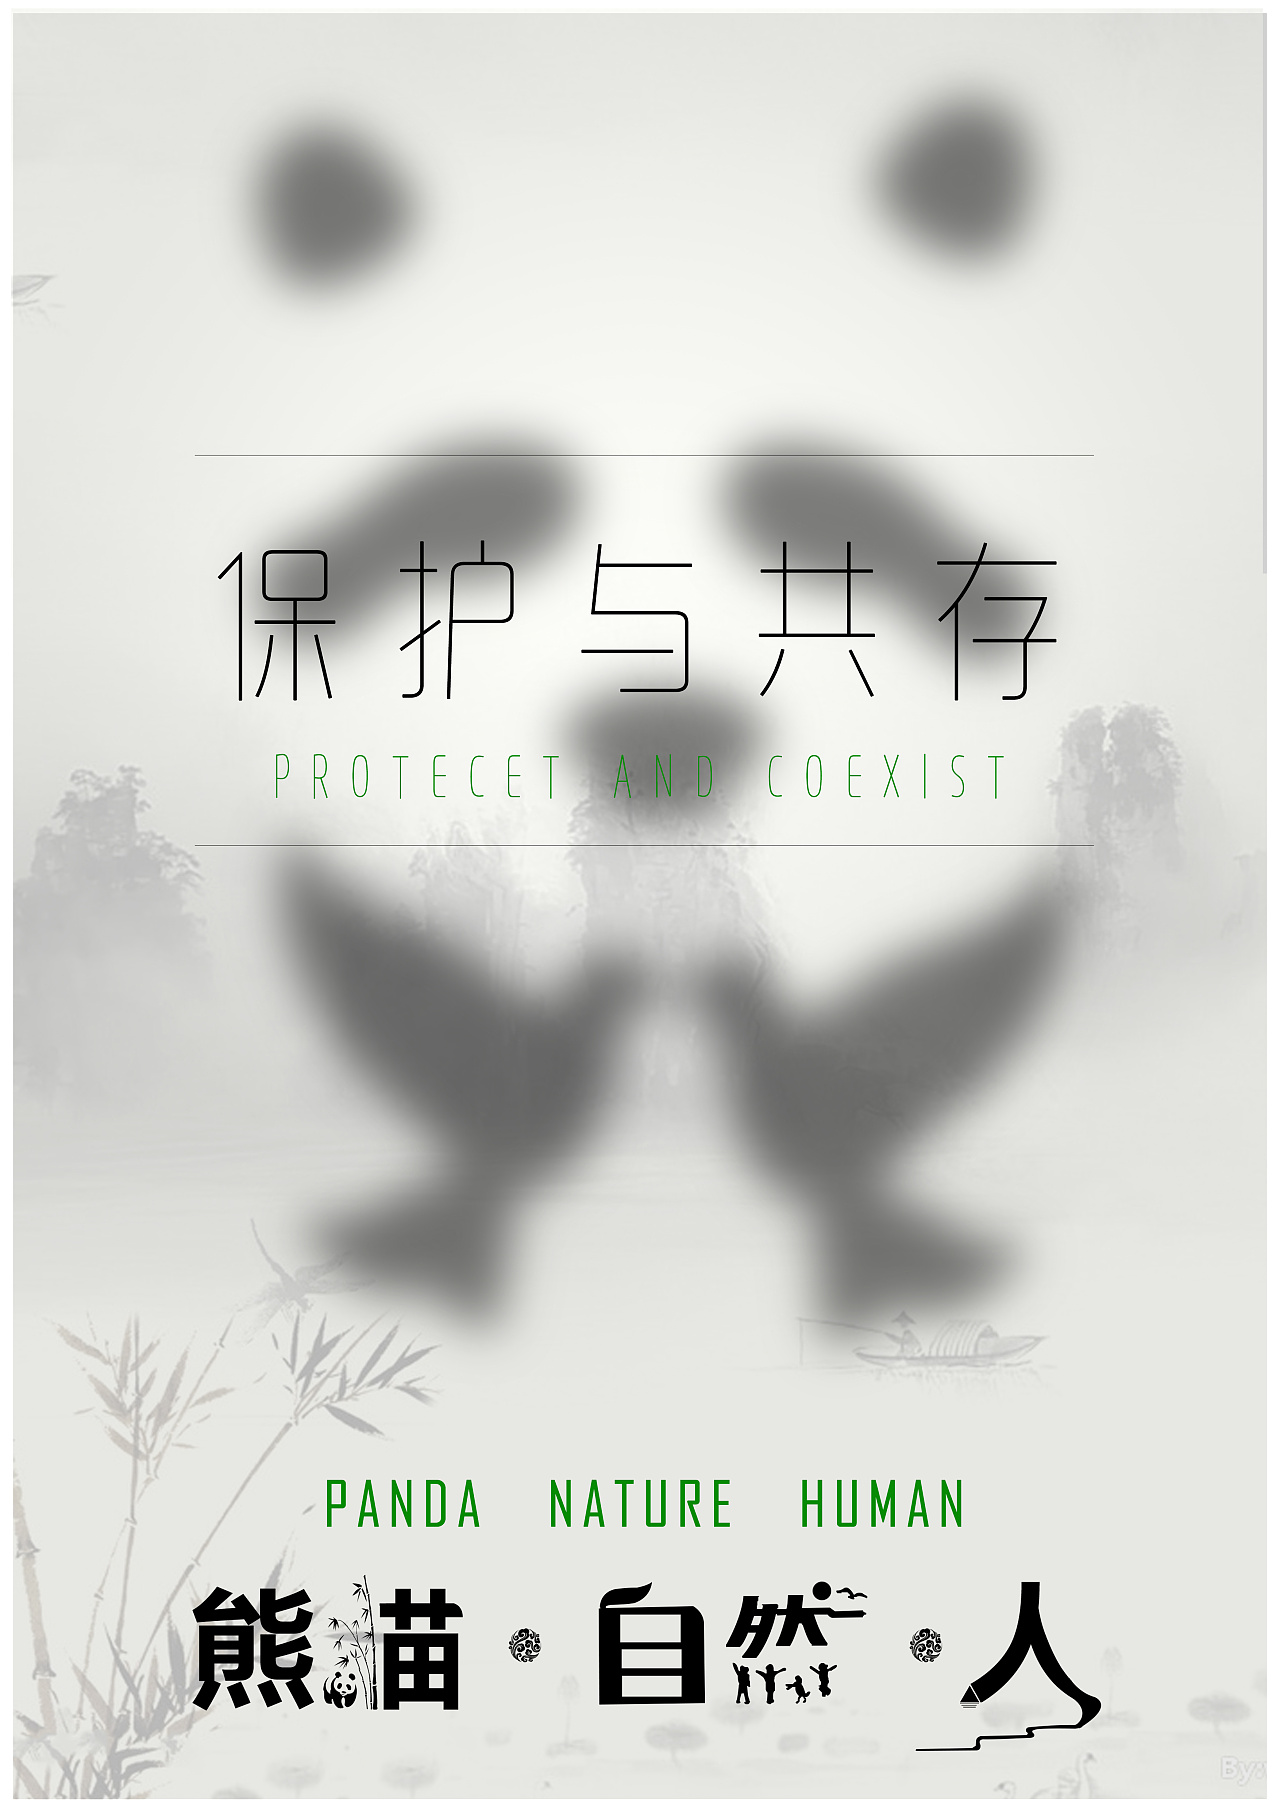 保护熊猫的海报标题图片